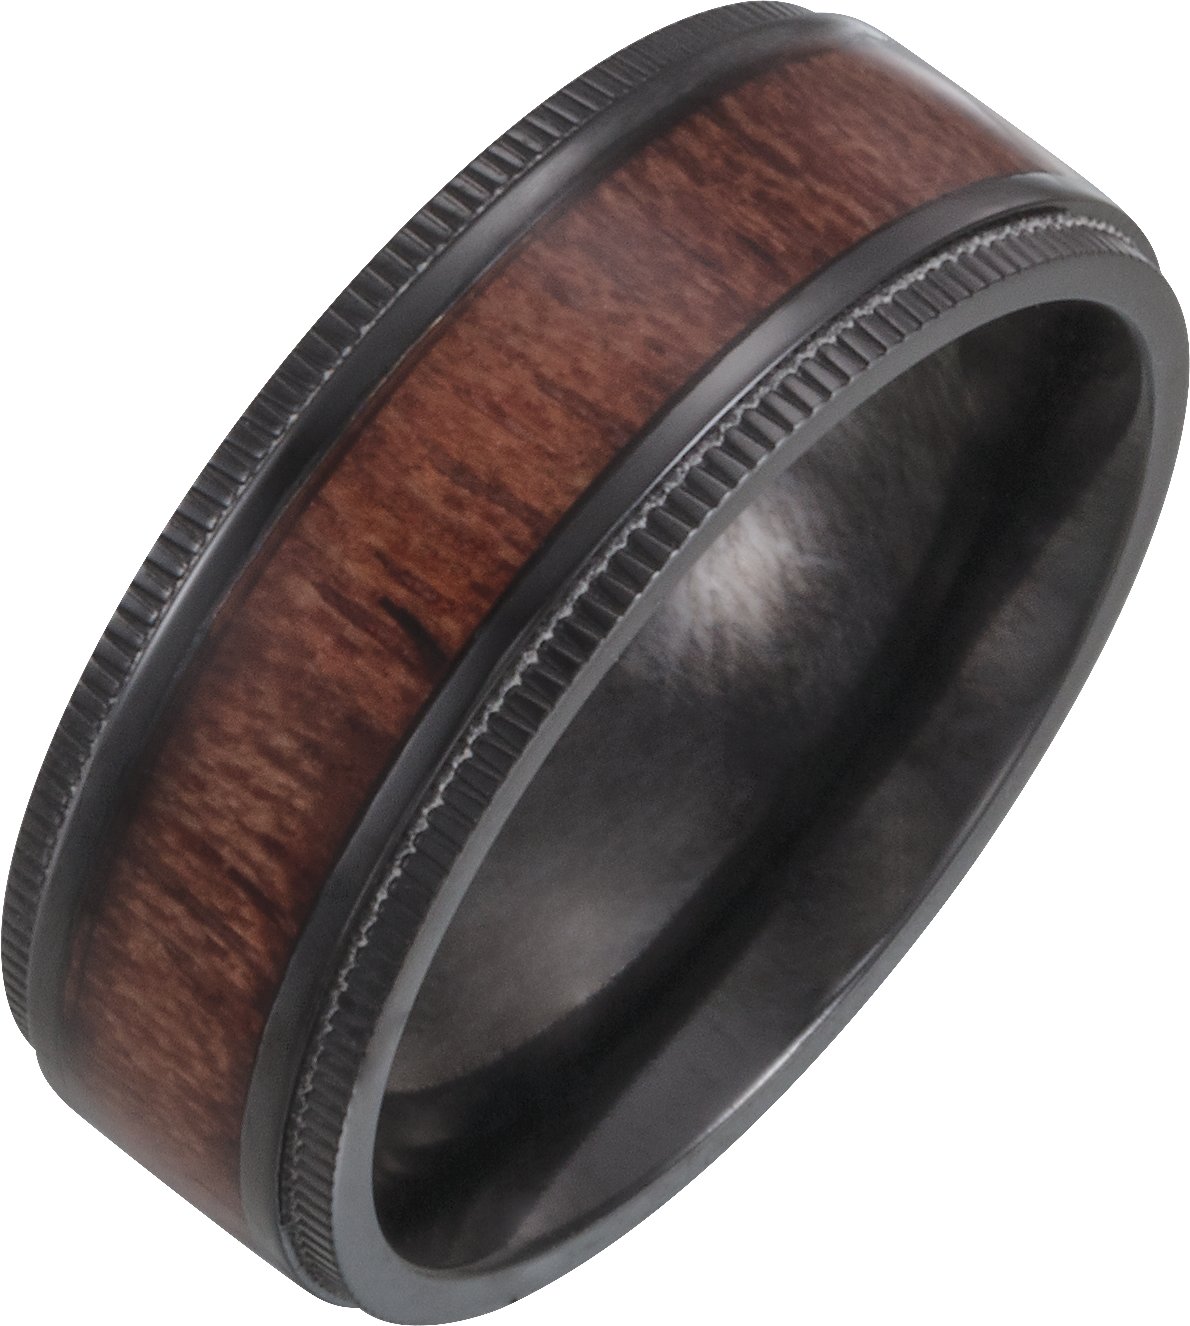 Black Titanium 8 mm Beveled-Edge Band with Wood Inlay Size 8